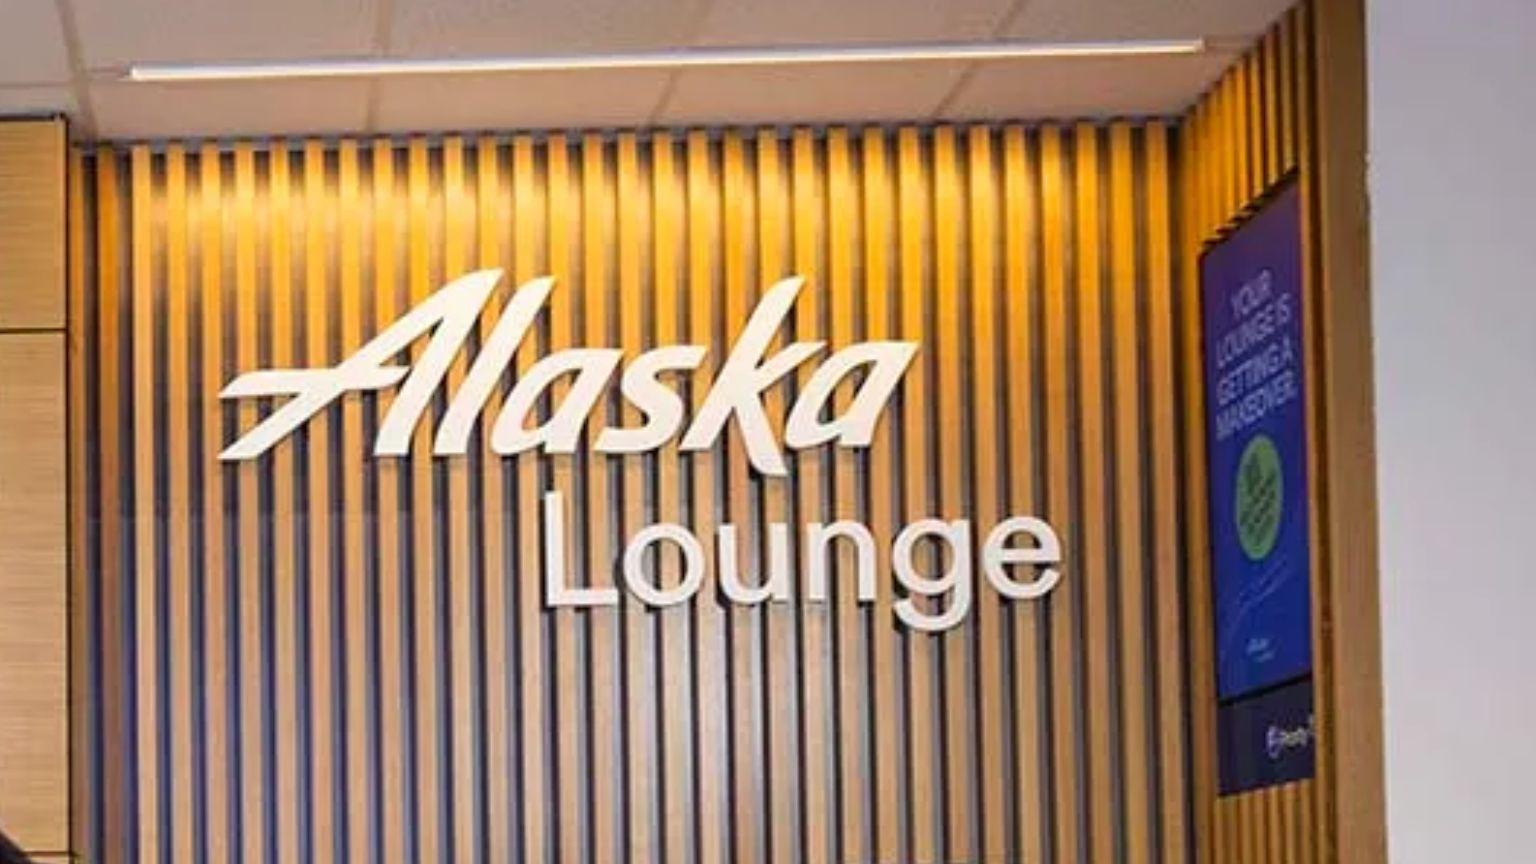 Alaska Lounge SEA Airport, Concourse D